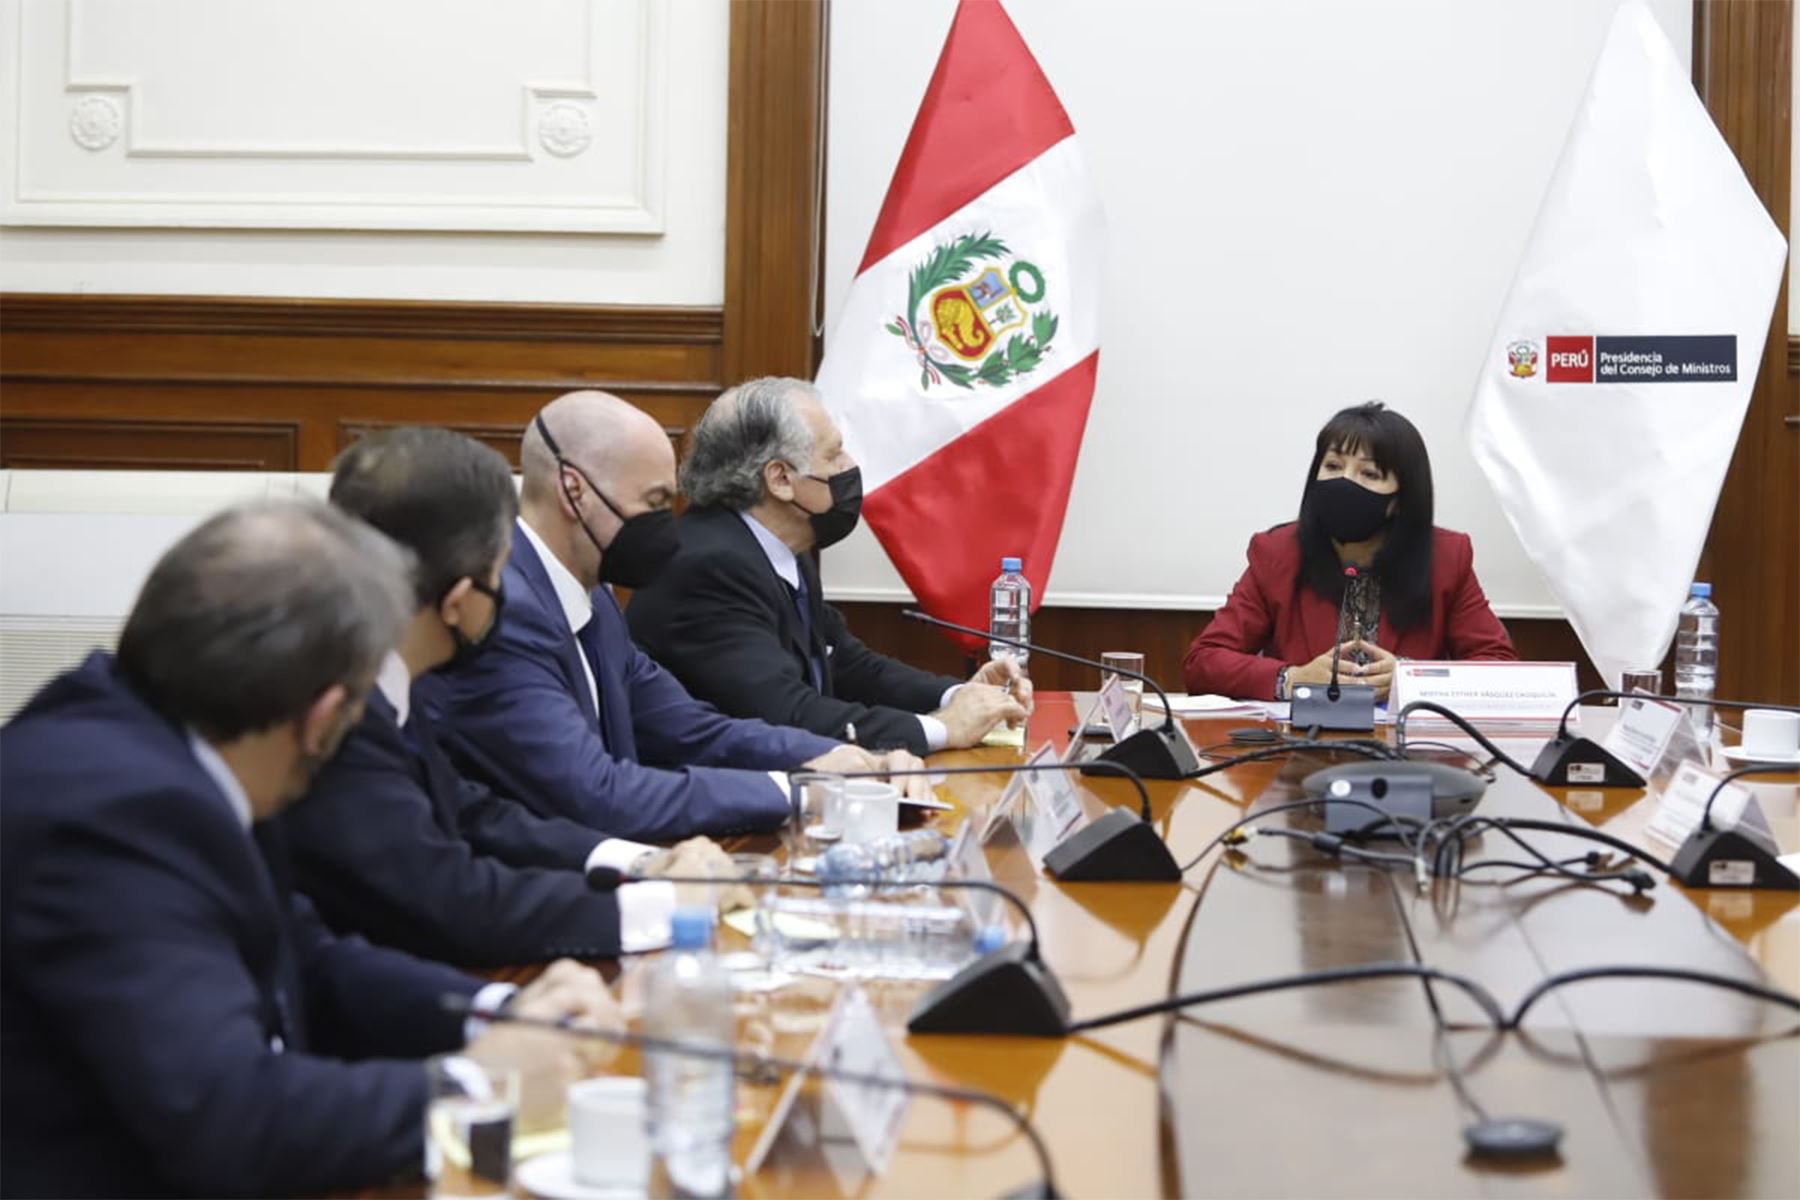 La presidenta del Consejo de Ministros, Mirtha Vásquez, sostuvo una reunión con el secretario general de la OEA, Luis Almagro, quien realiza la primera visita oficial al Perú, desde que se inició el Gobierno del presidente Pedro Castillo.
Foto: PCM